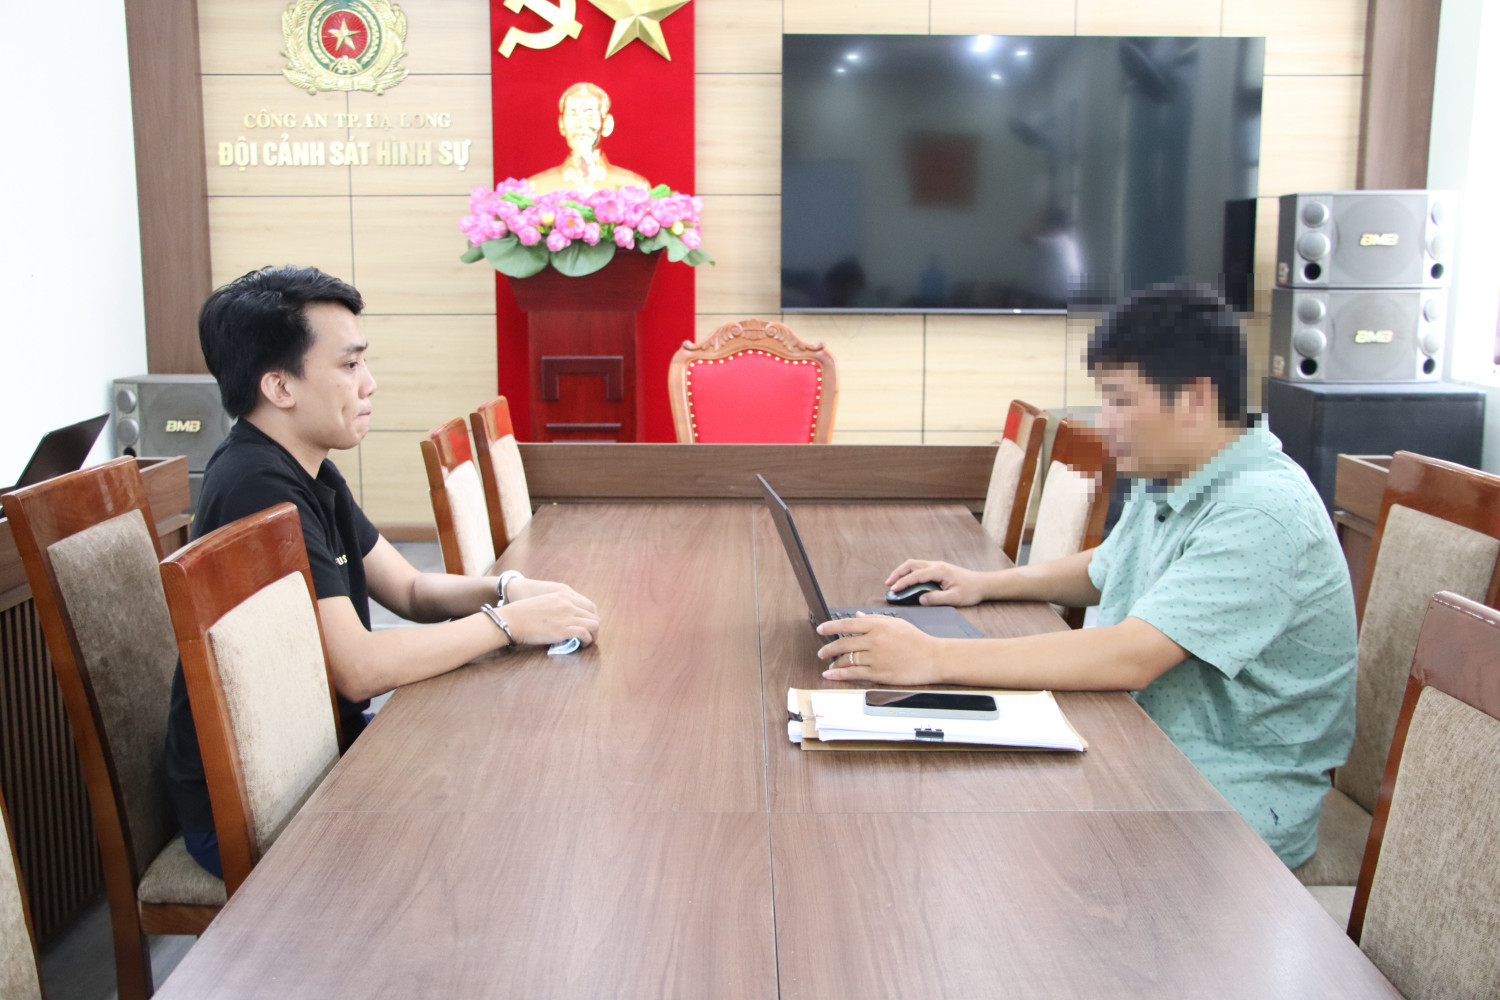 Cơ quan điều tra lấy lời khai Nguyễn Phi Cơ - đối tượng cầm đầu đường dây mua bán ma tuý cần sa